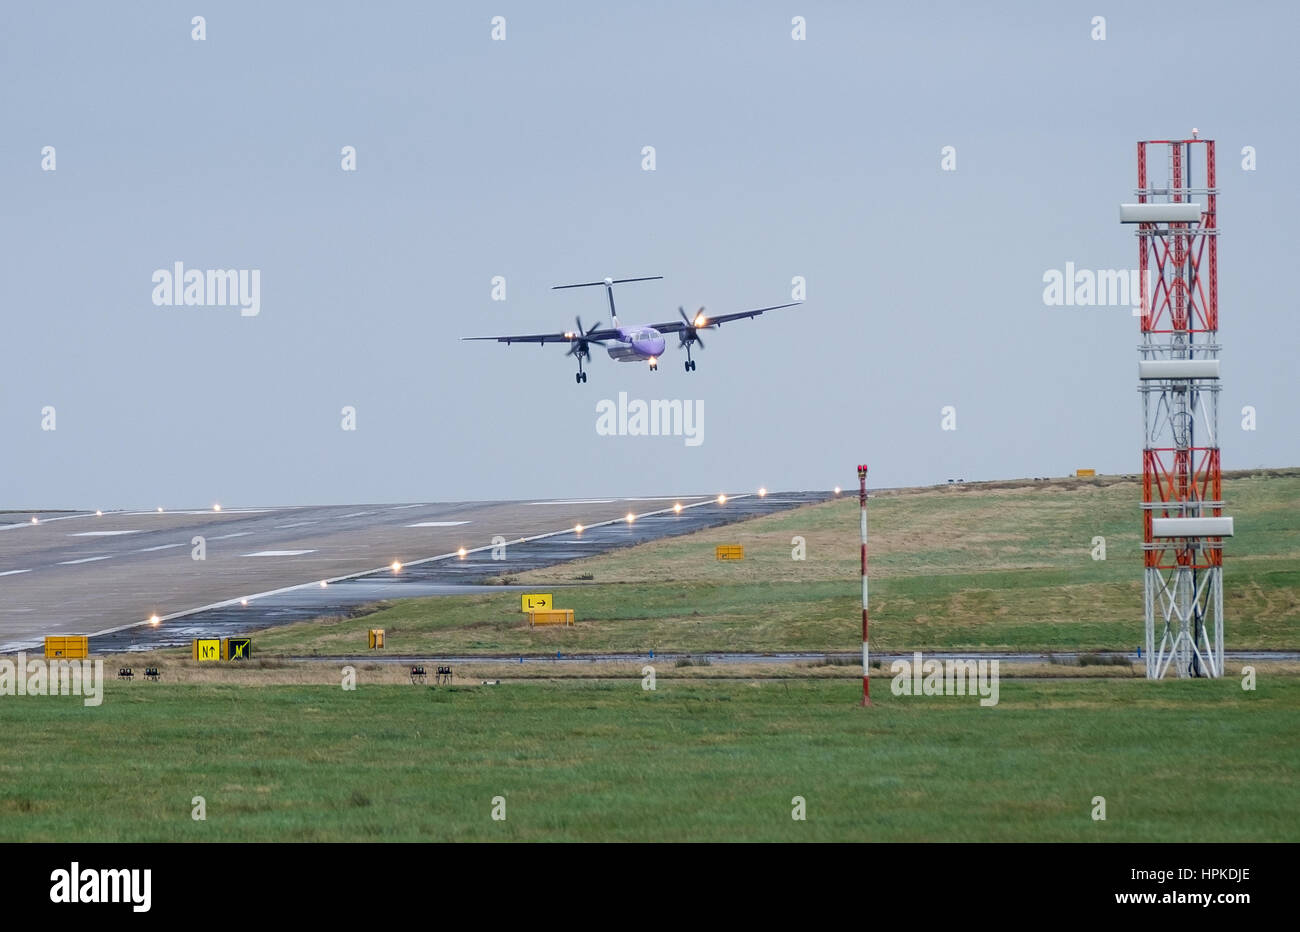 L'aéroport de Leeds et Bradford, West Yorkshire. UK. Jeudi 23 février 2017. Turboprop Flybe vol passager venant à la terre dans des vents de travers à l'aéroport le plus élevé du Royaume-Uni- Leeds Bradford. Crédit : Ian Wray/Alamy Live News Banque D'Images